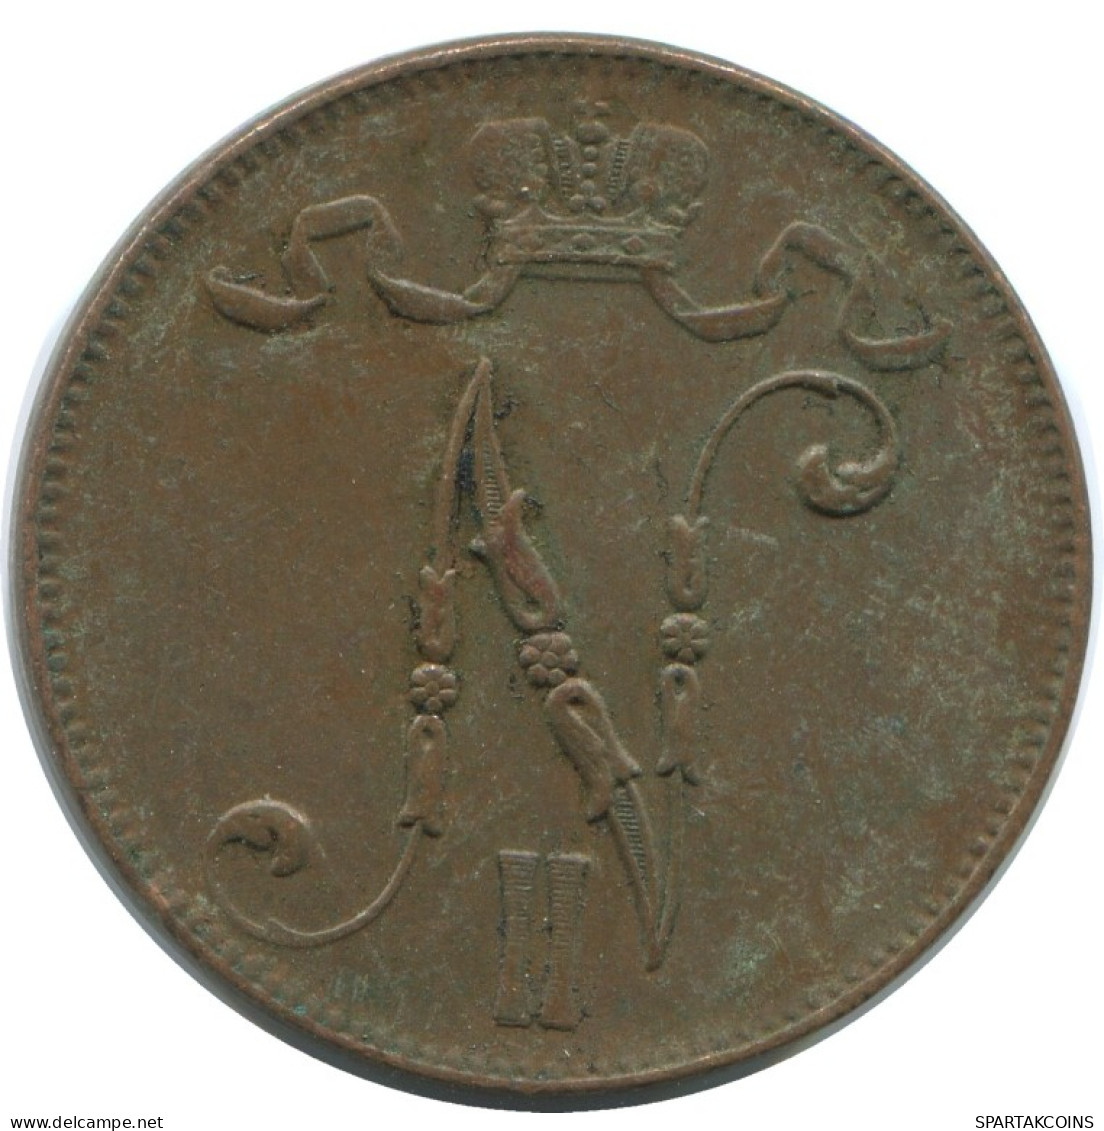 5 PENNIA 1916 FINLANDIA FINLAND Moneda RUSIA RUSSIA EMPIRE #AB159.5.E.A - Finland